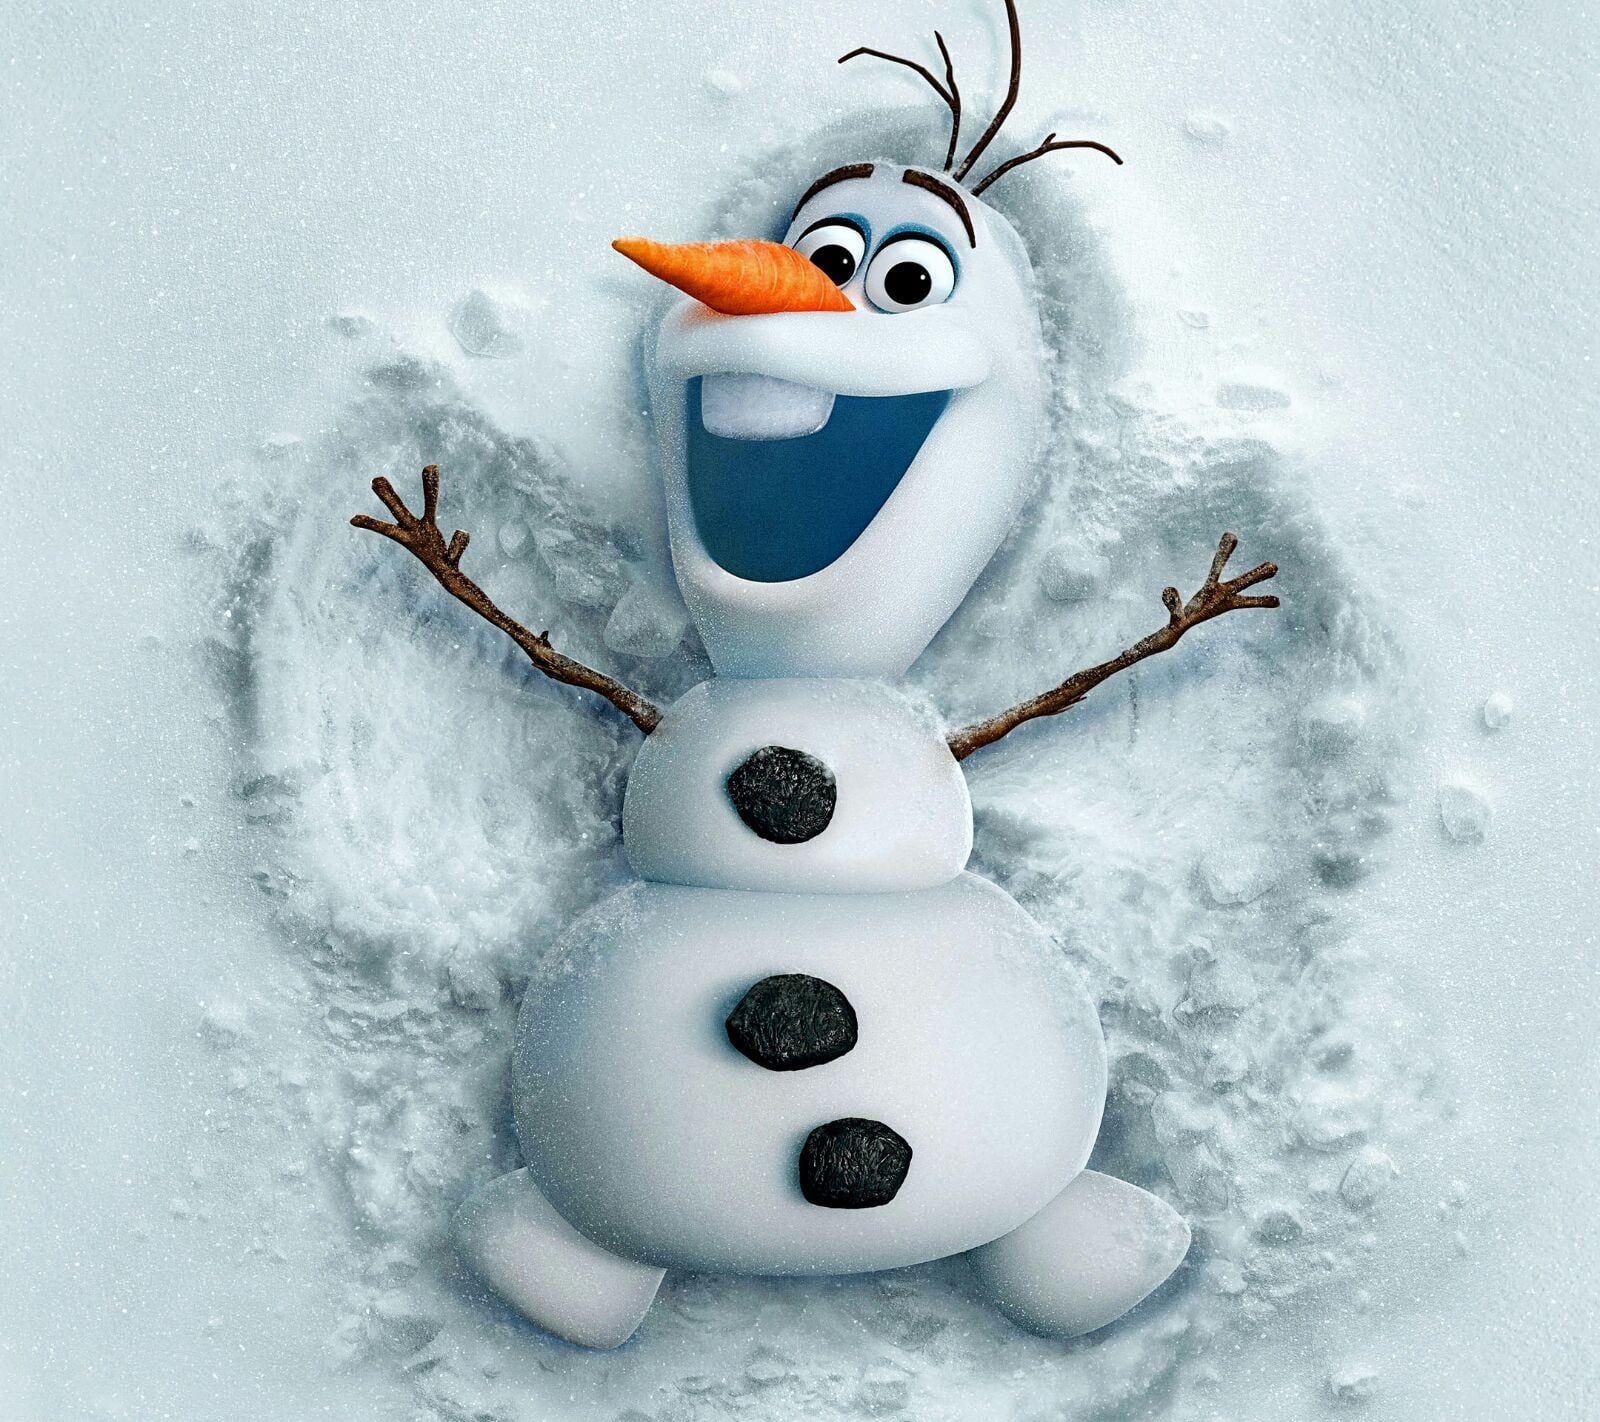 Disney Frozen Olaf digital wallpaper, Olaf, snowman, Frozen movie